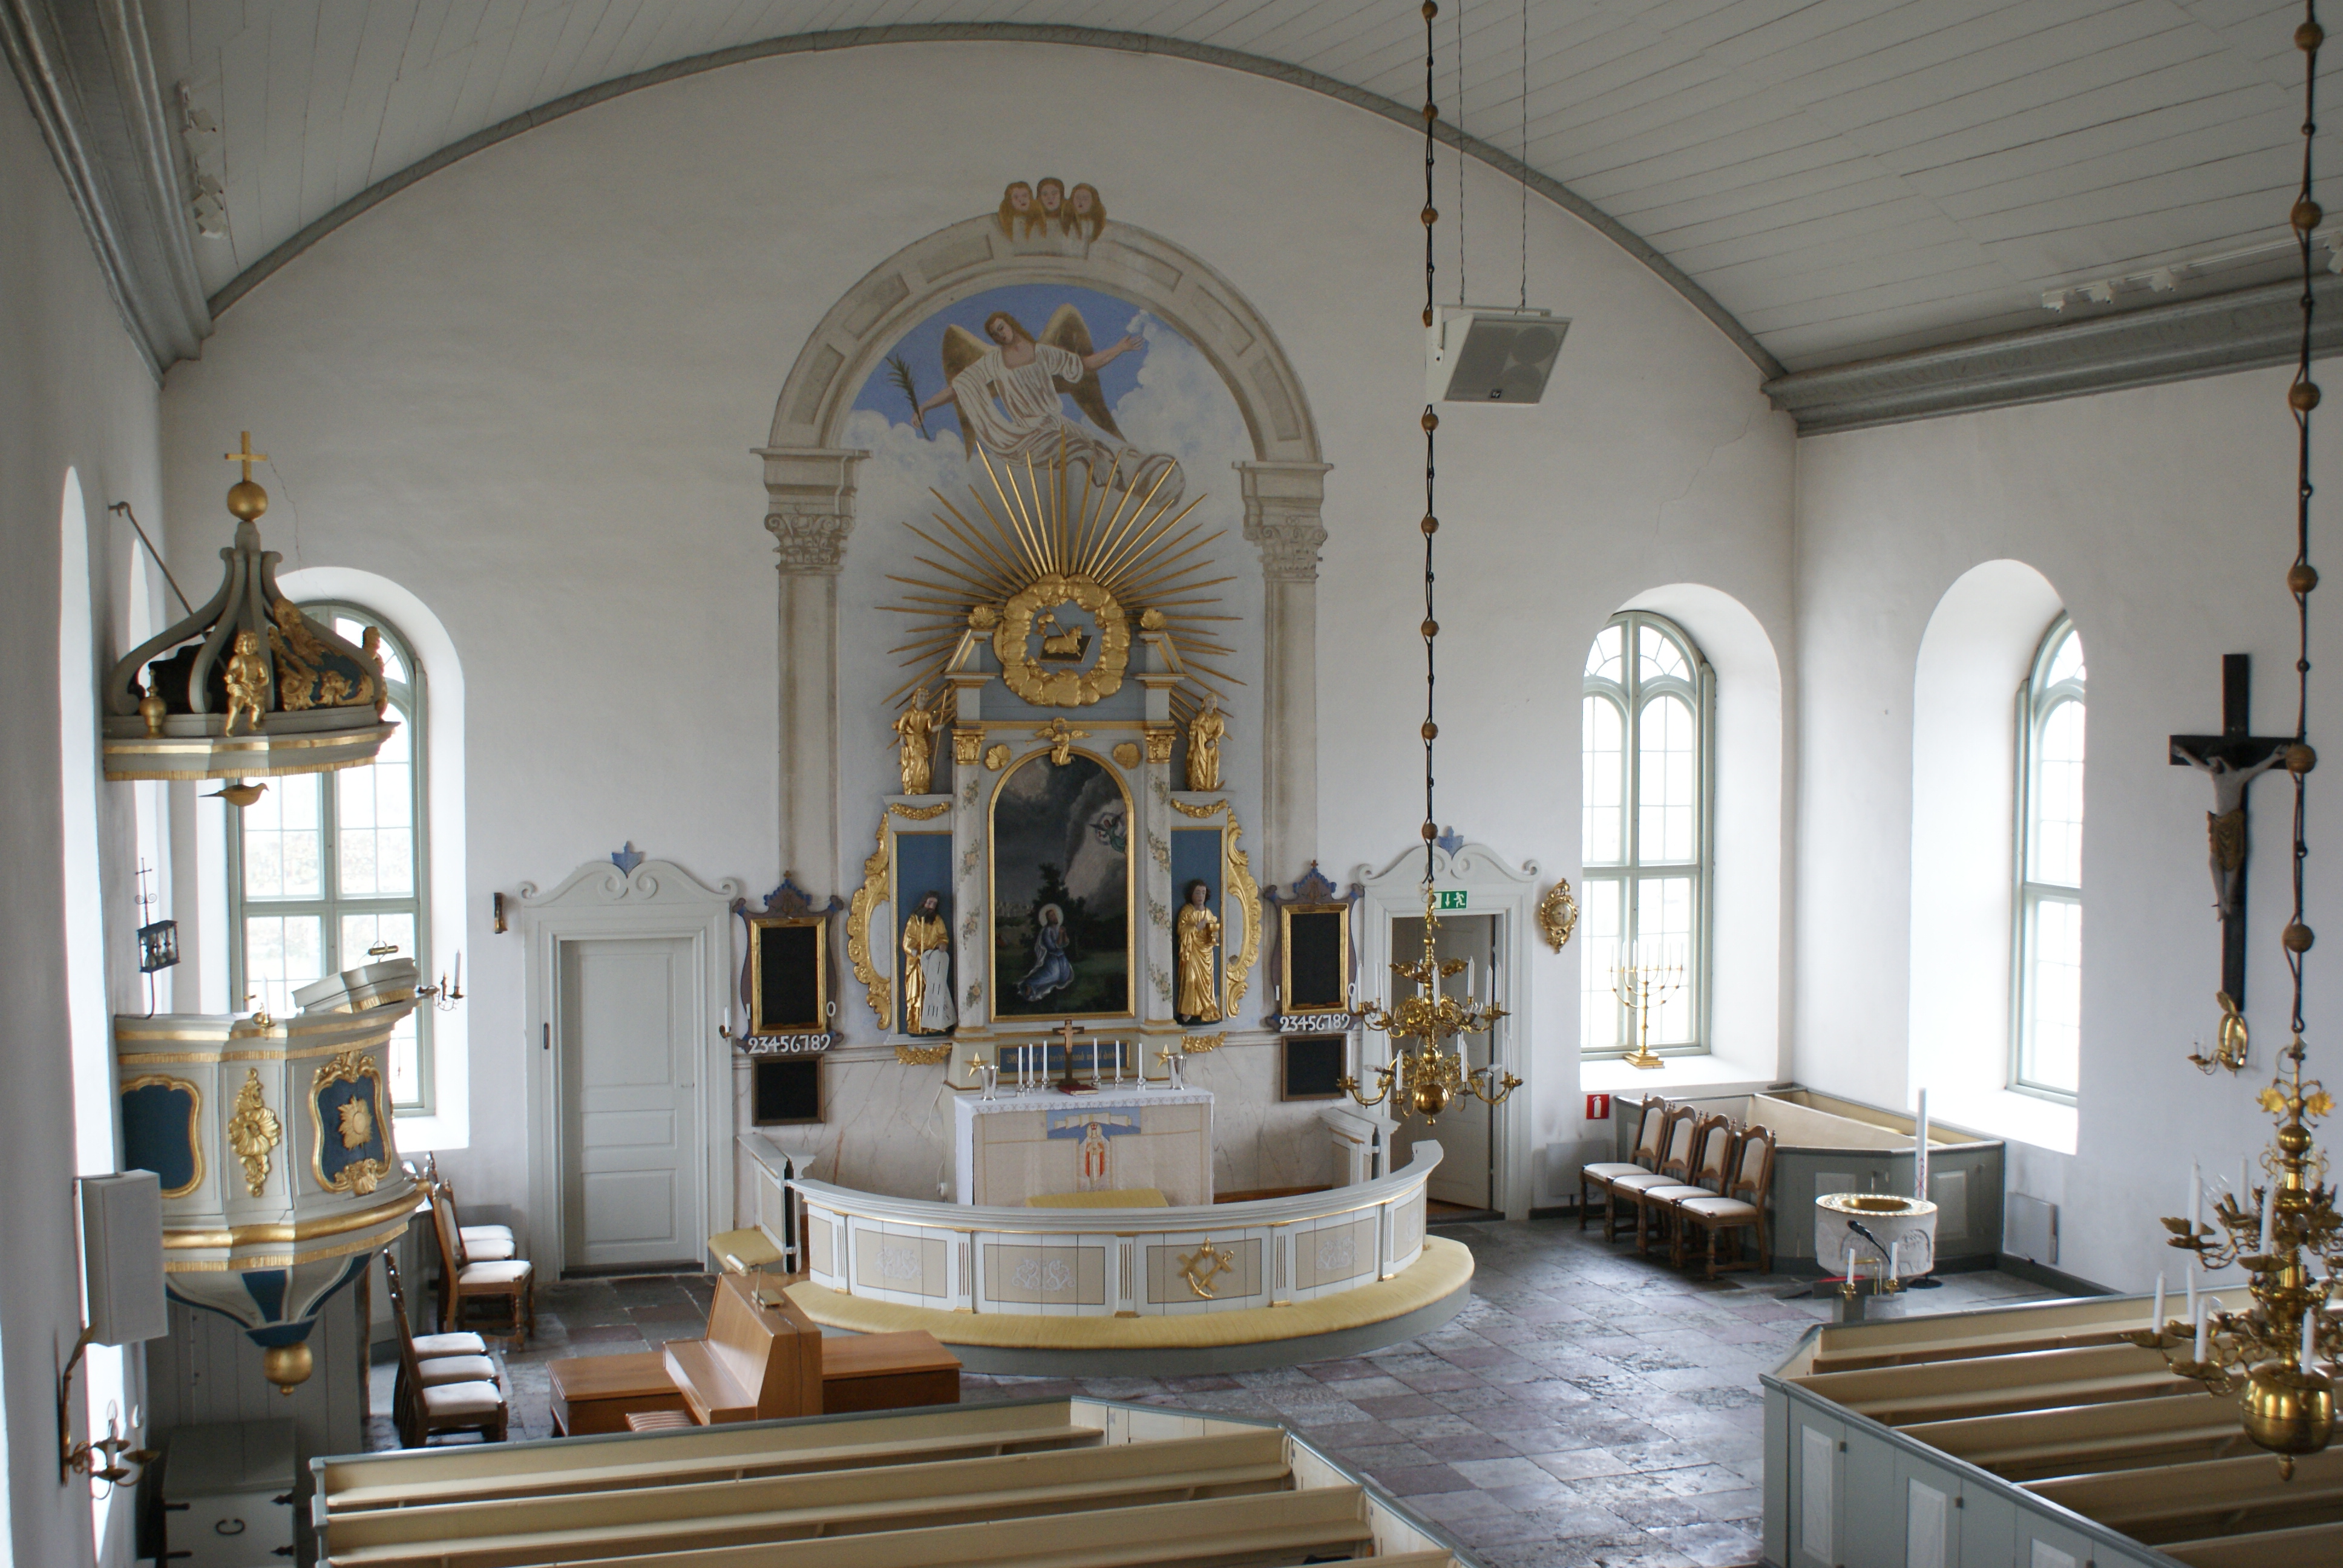 Alböke kyrka, interiör.
